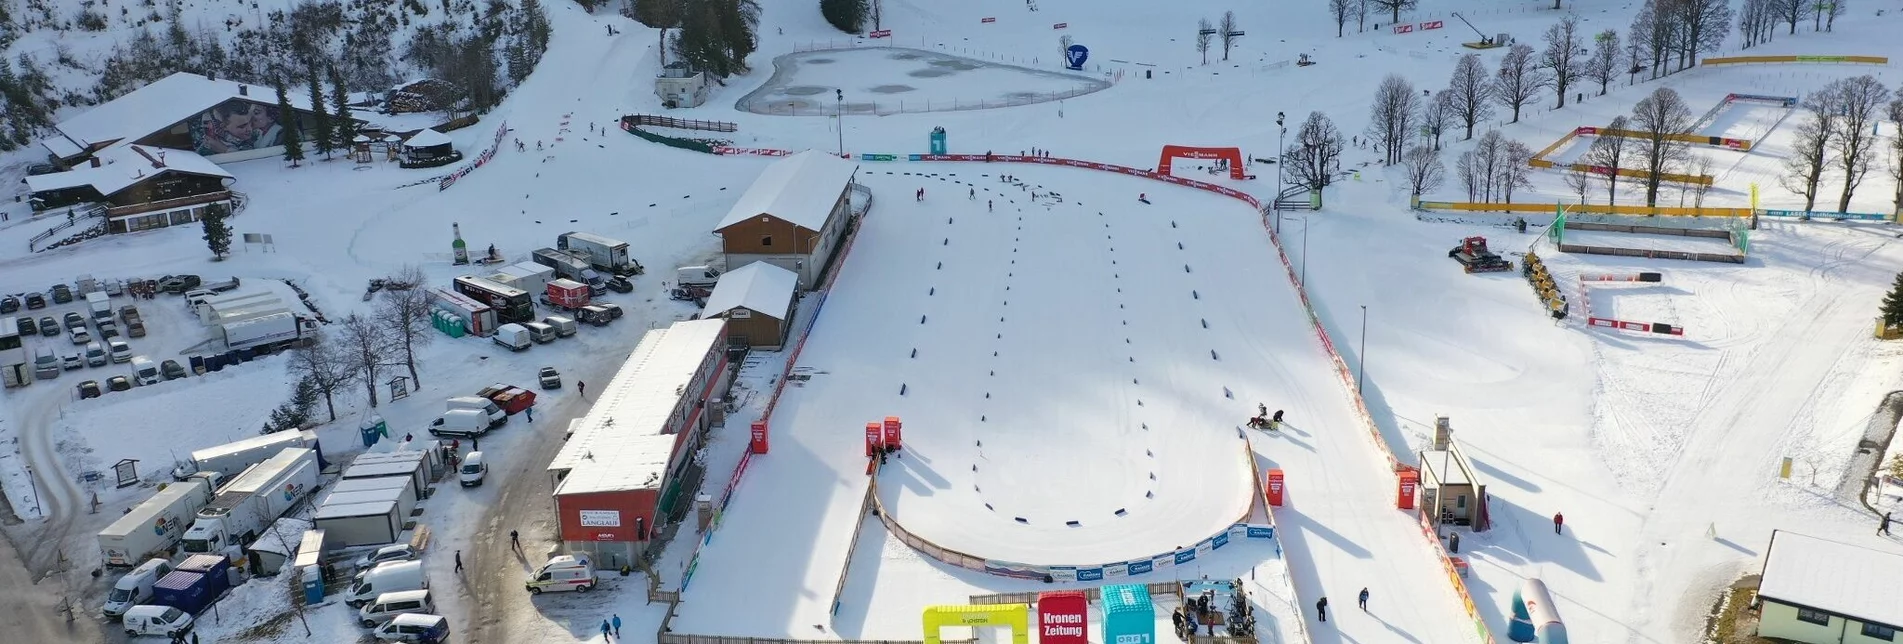 Ski nordic skating World Cup Trail - Touren-Impression #1 | © Erlebnisregion Schladming-Dachstein